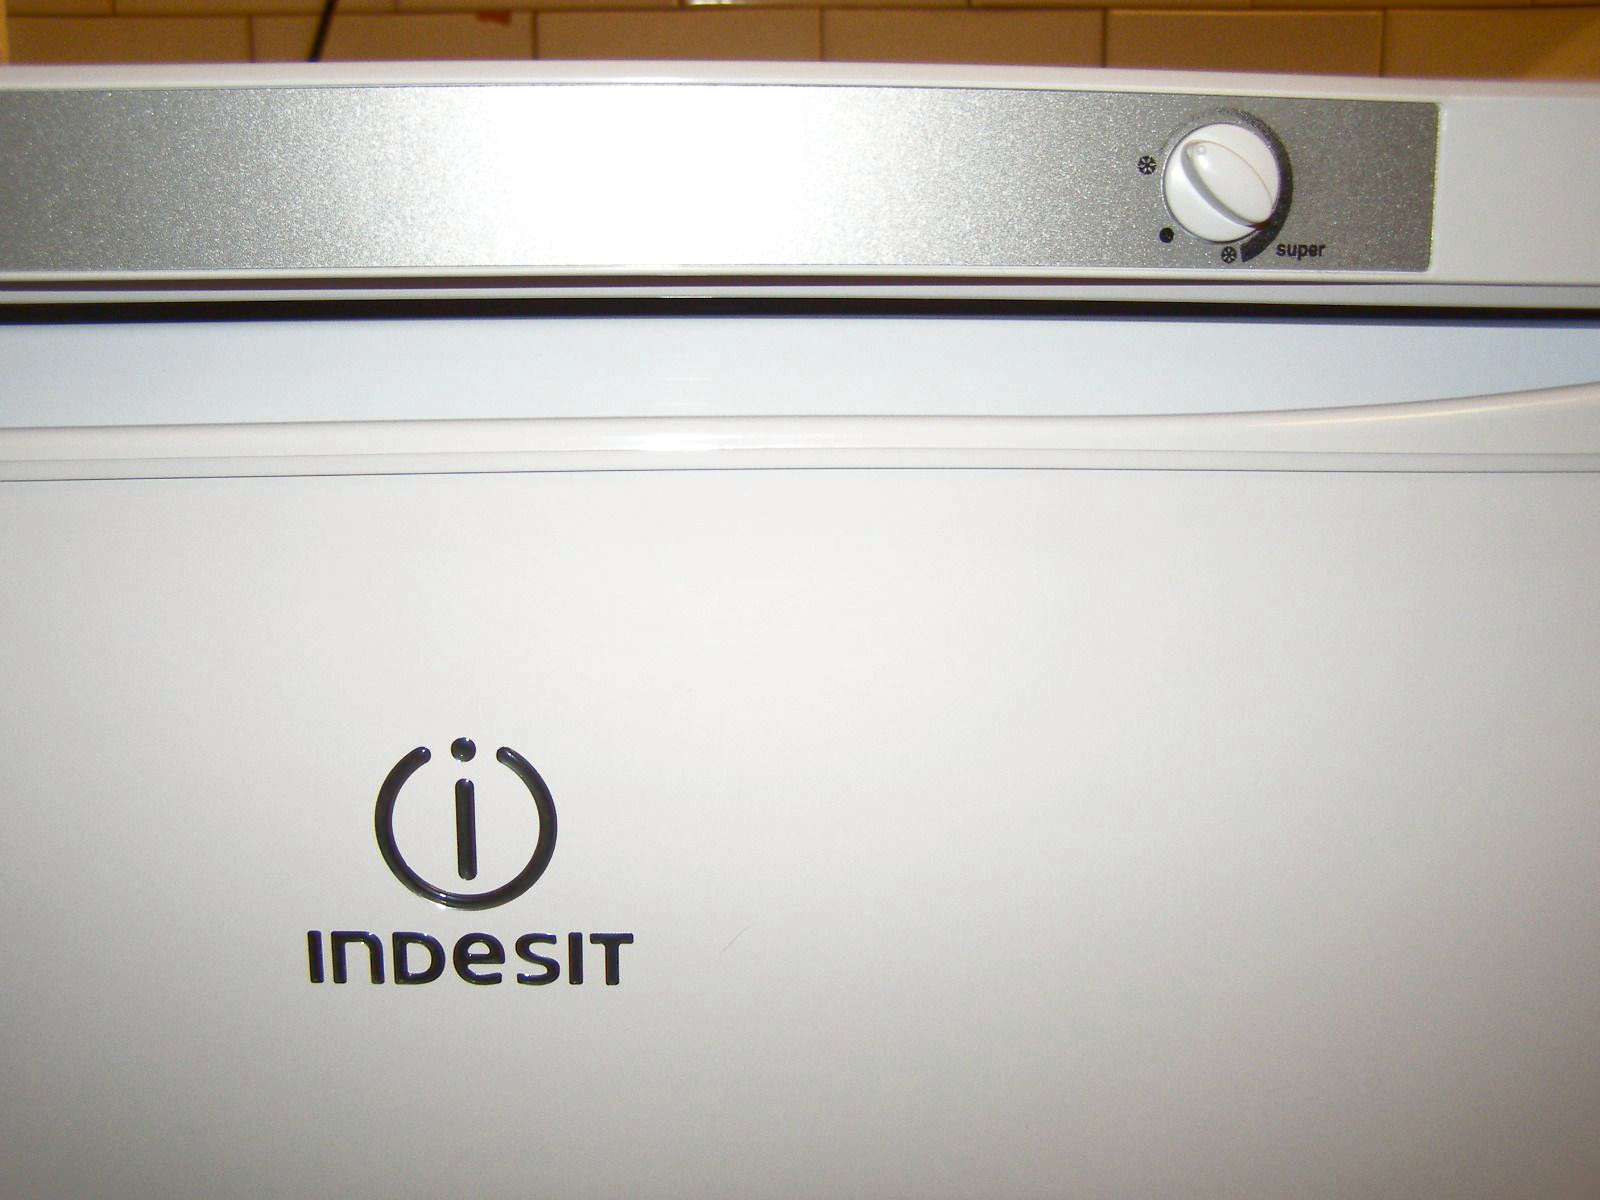 Холодильник Indesit пахнет как будто он горит